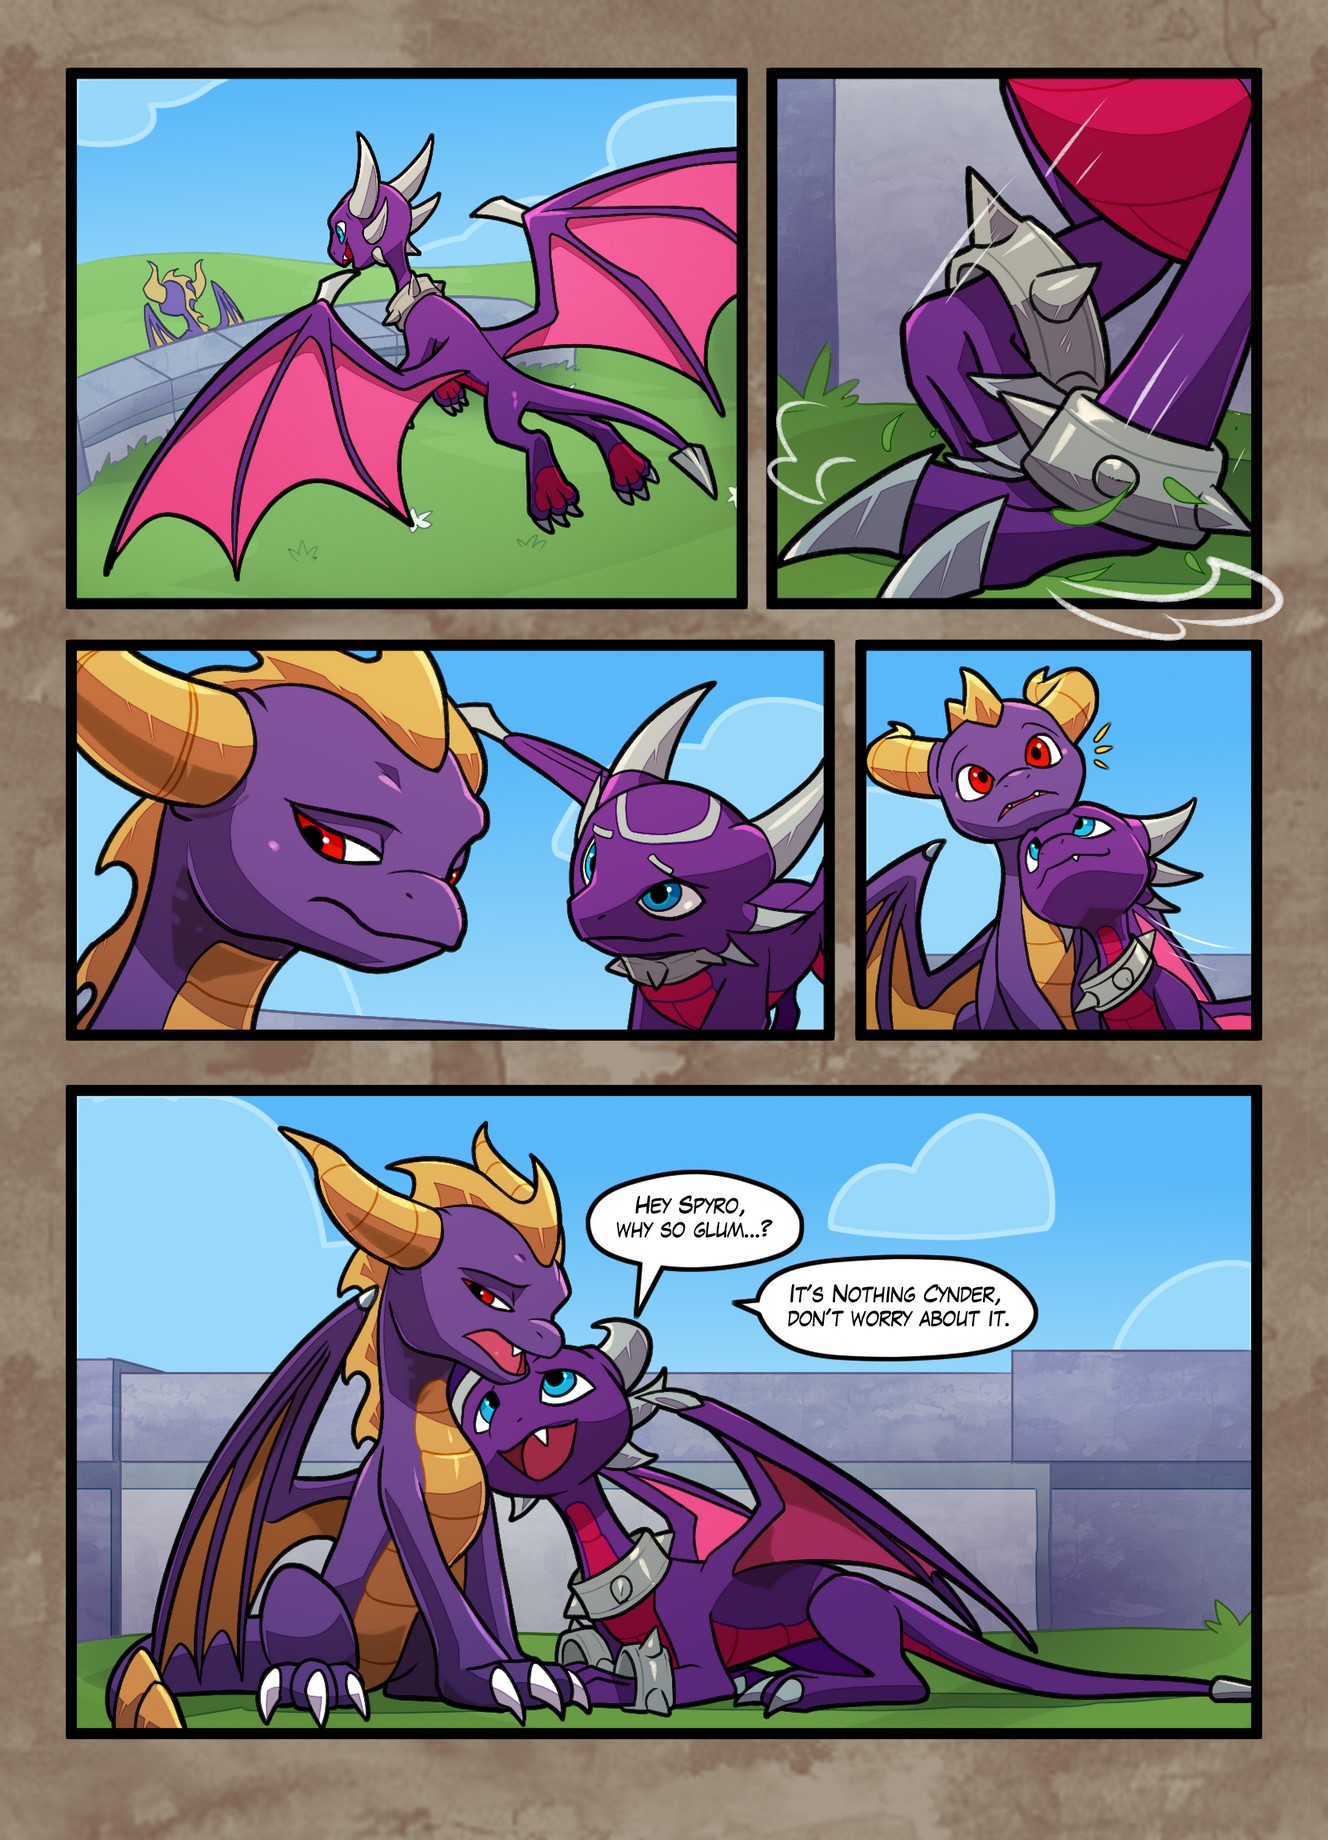 Dragon comic porn